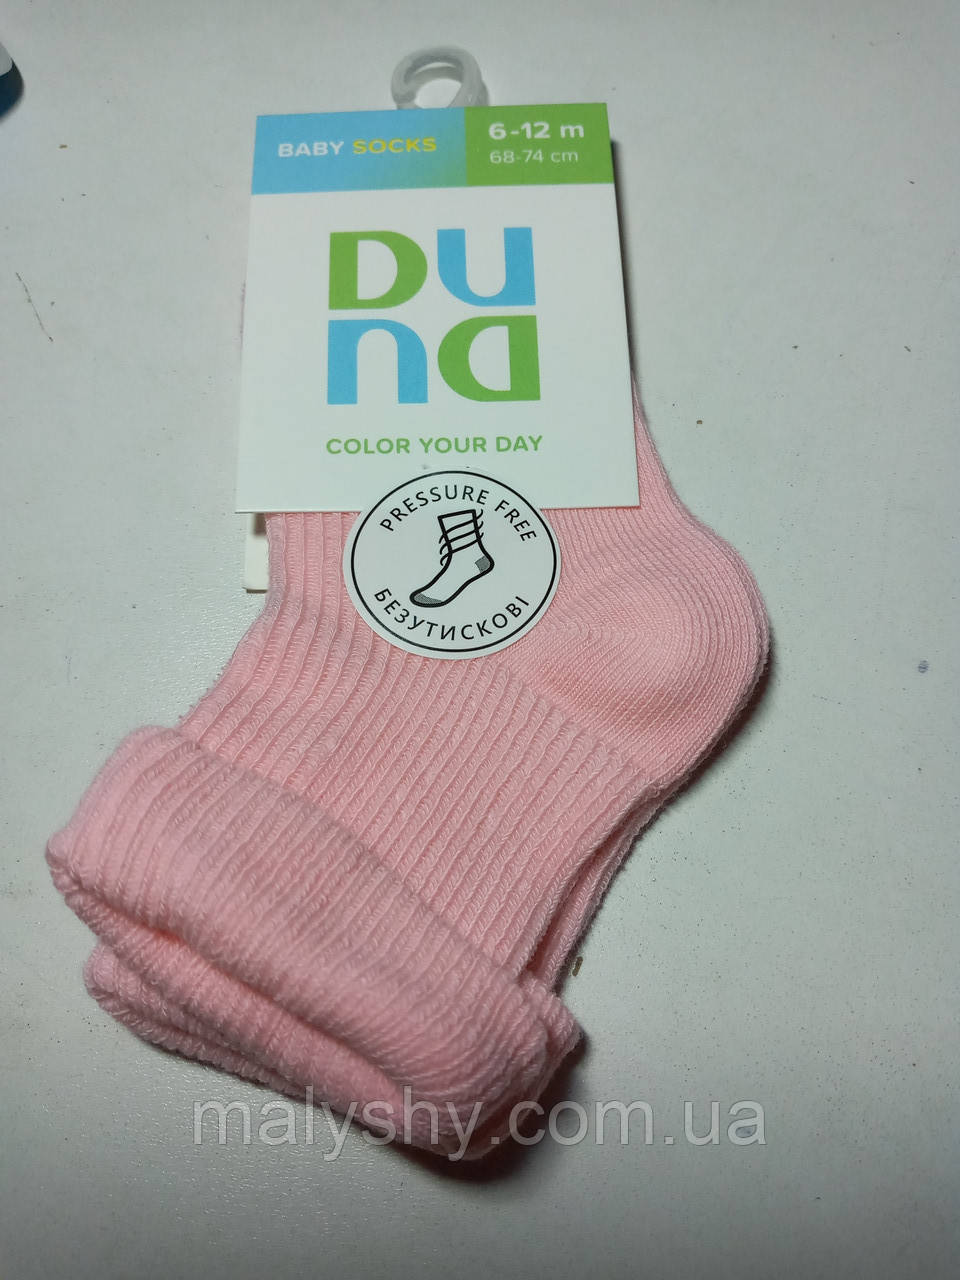 Дитячі шкарпетки для немовлят - Дюна р. 10-12 (шкарпетки дитячі) 4105-1000-рожевий